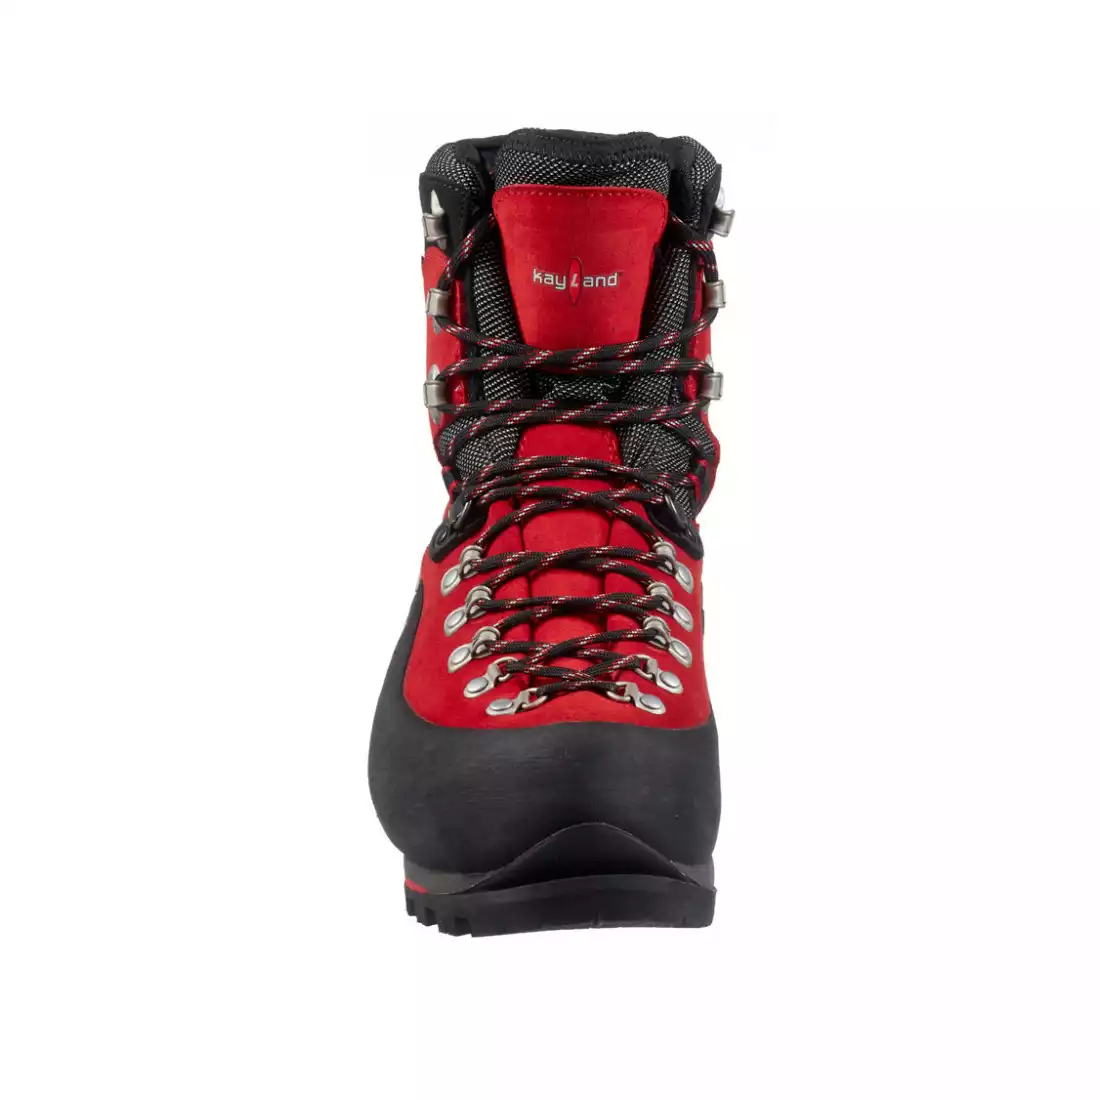 KAYLAND SUPER ICE EVO GTX Pánske turistické topánky do vysokých hôr, GORE-TEX, VIBRAM, červeno-čierna